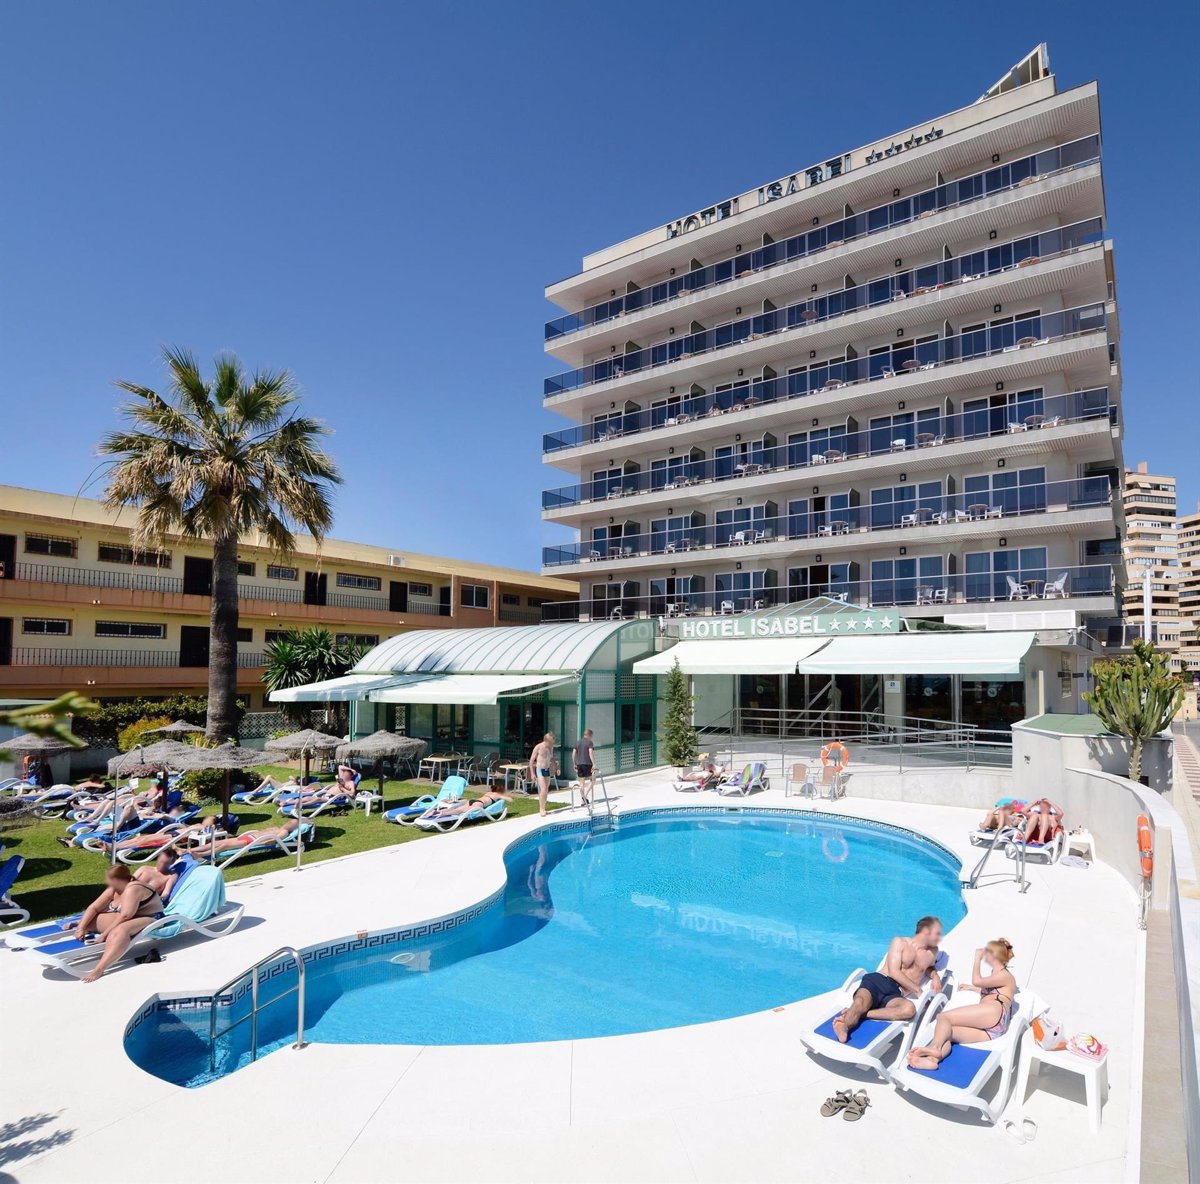 Los hoteles facturaron 110 euros de media por habitación en marzo, casi un 10% más que el año anterior